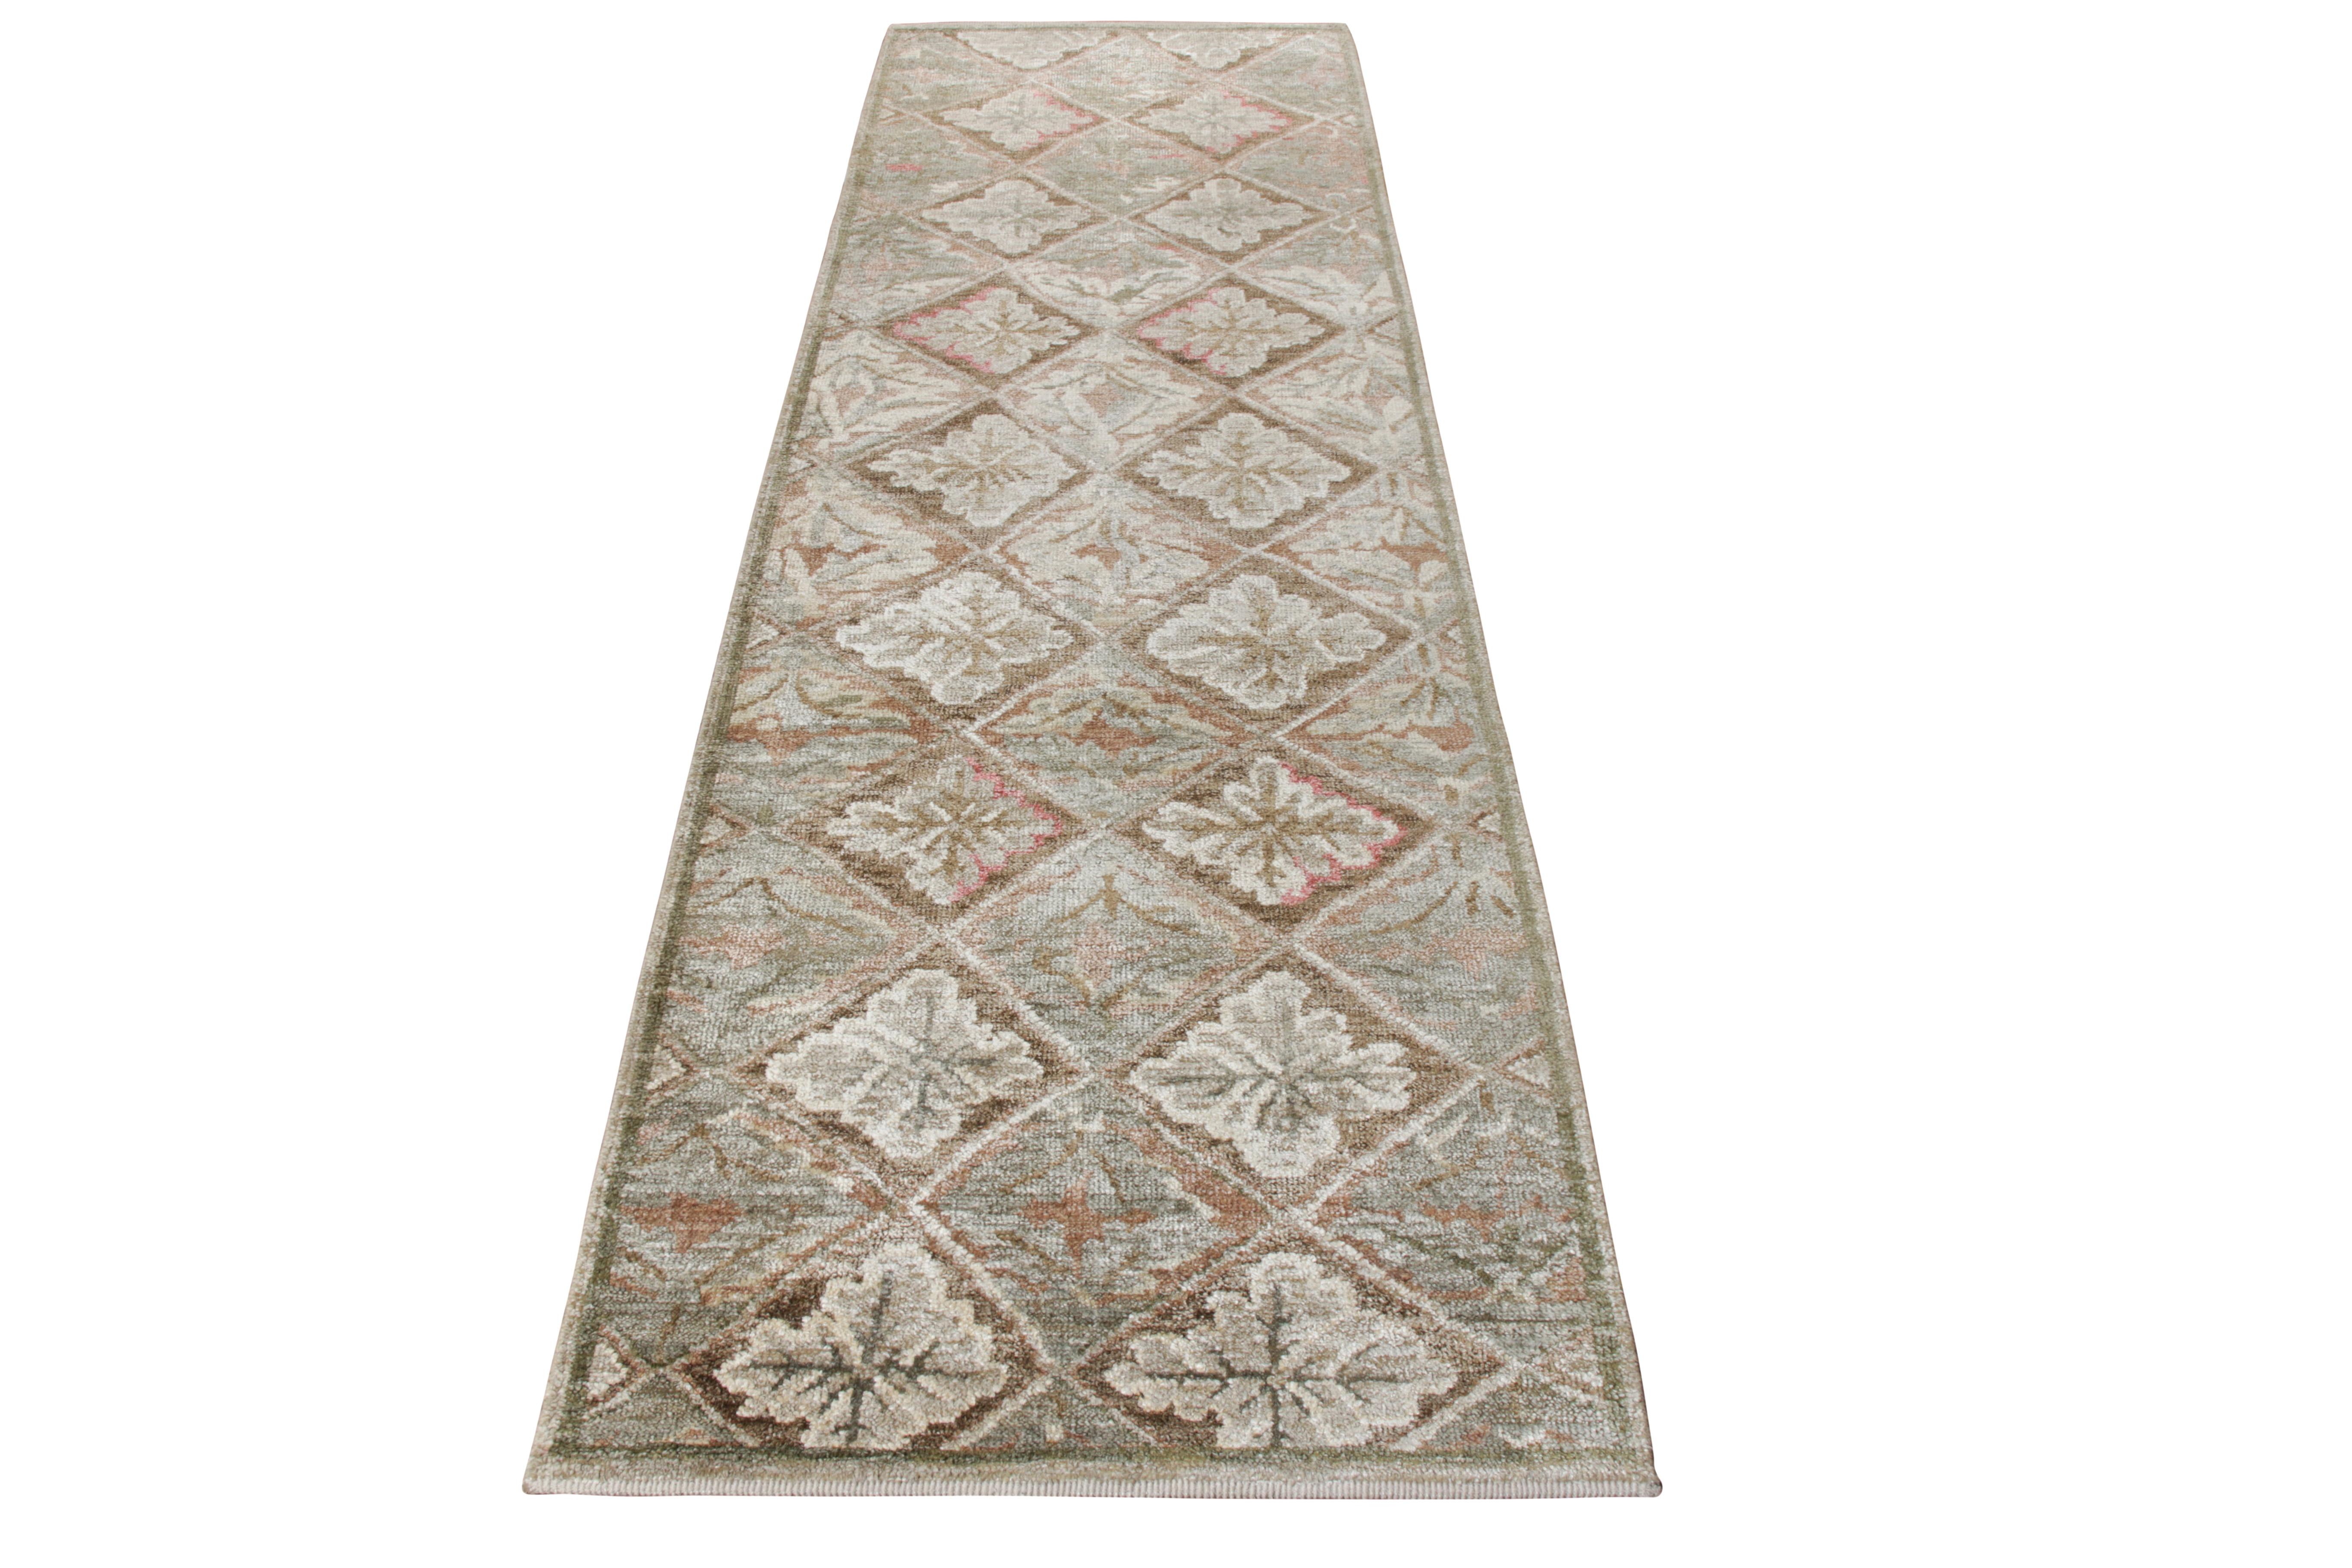 Rug & Kilim rend hommage au célèbre tapis français d'Aubusson dans cet ajout de coureur à sa très convoitée collection européenne. Noué à la main dans la meilleure qualité de soie sari, cette pièce inspirée du 18ème siècle reflète un attrait unique